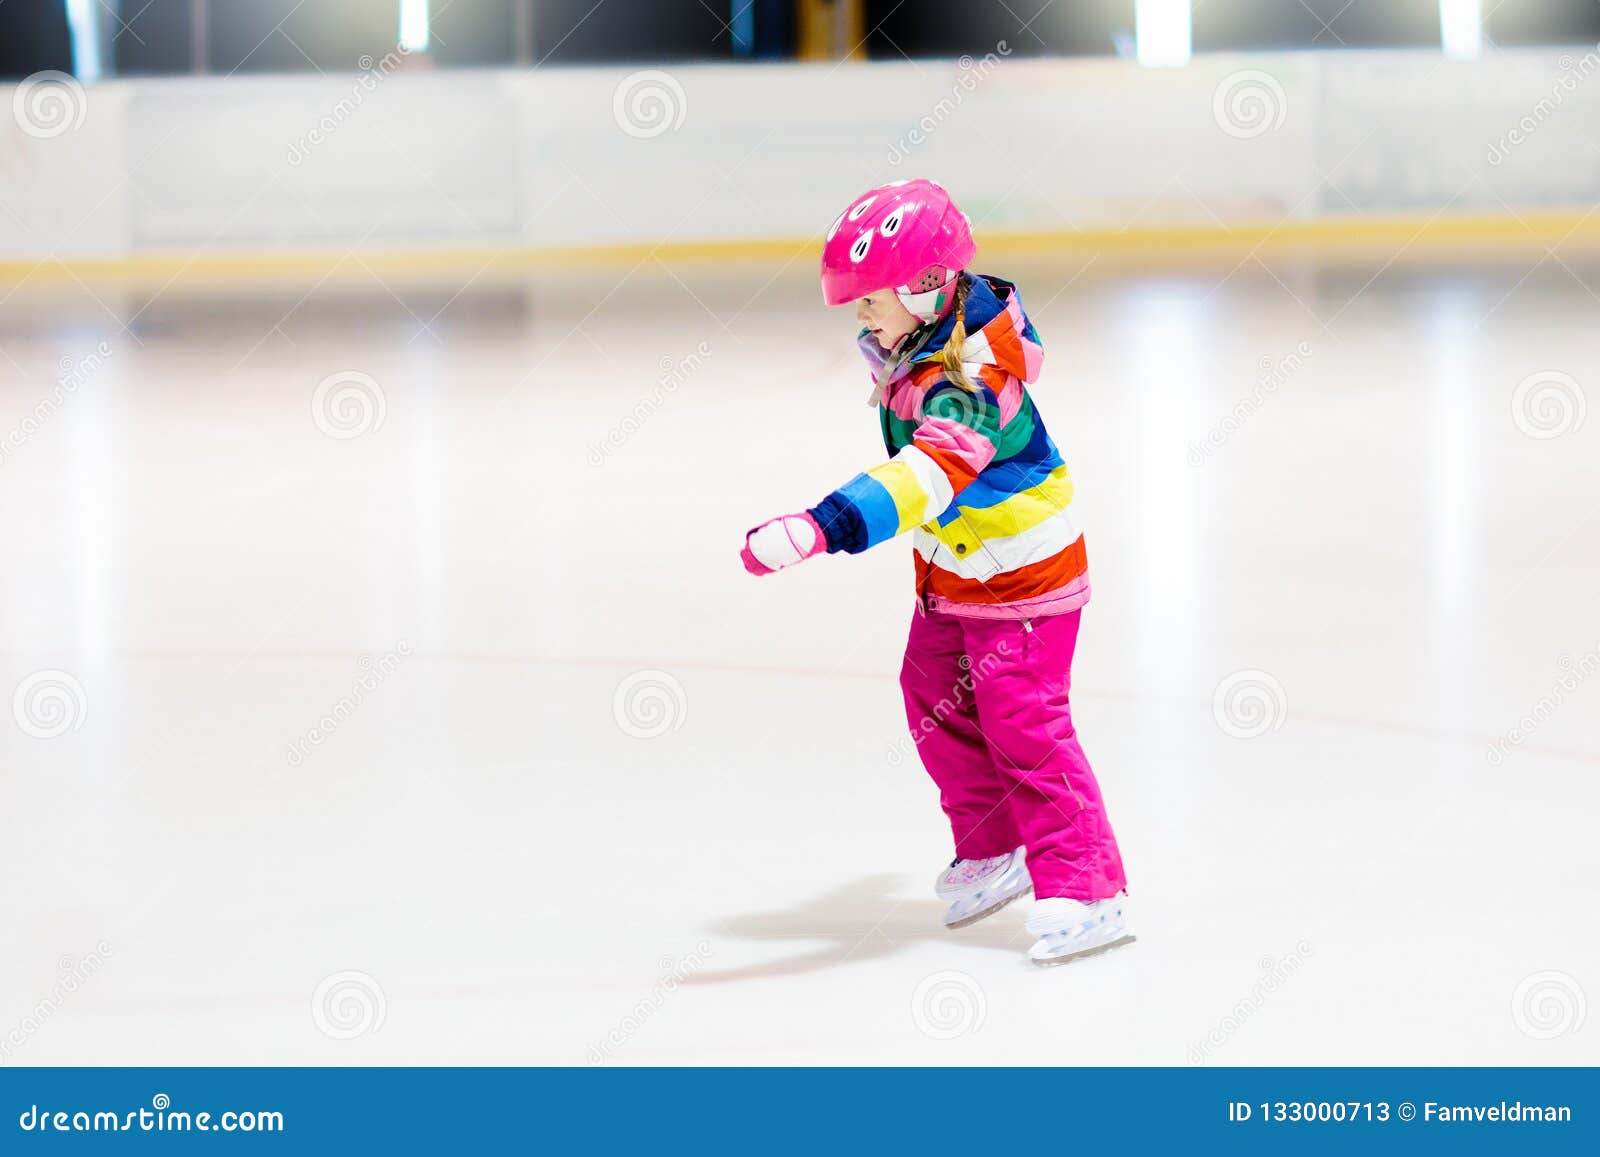 child skating on indoor ice rink. kids skate